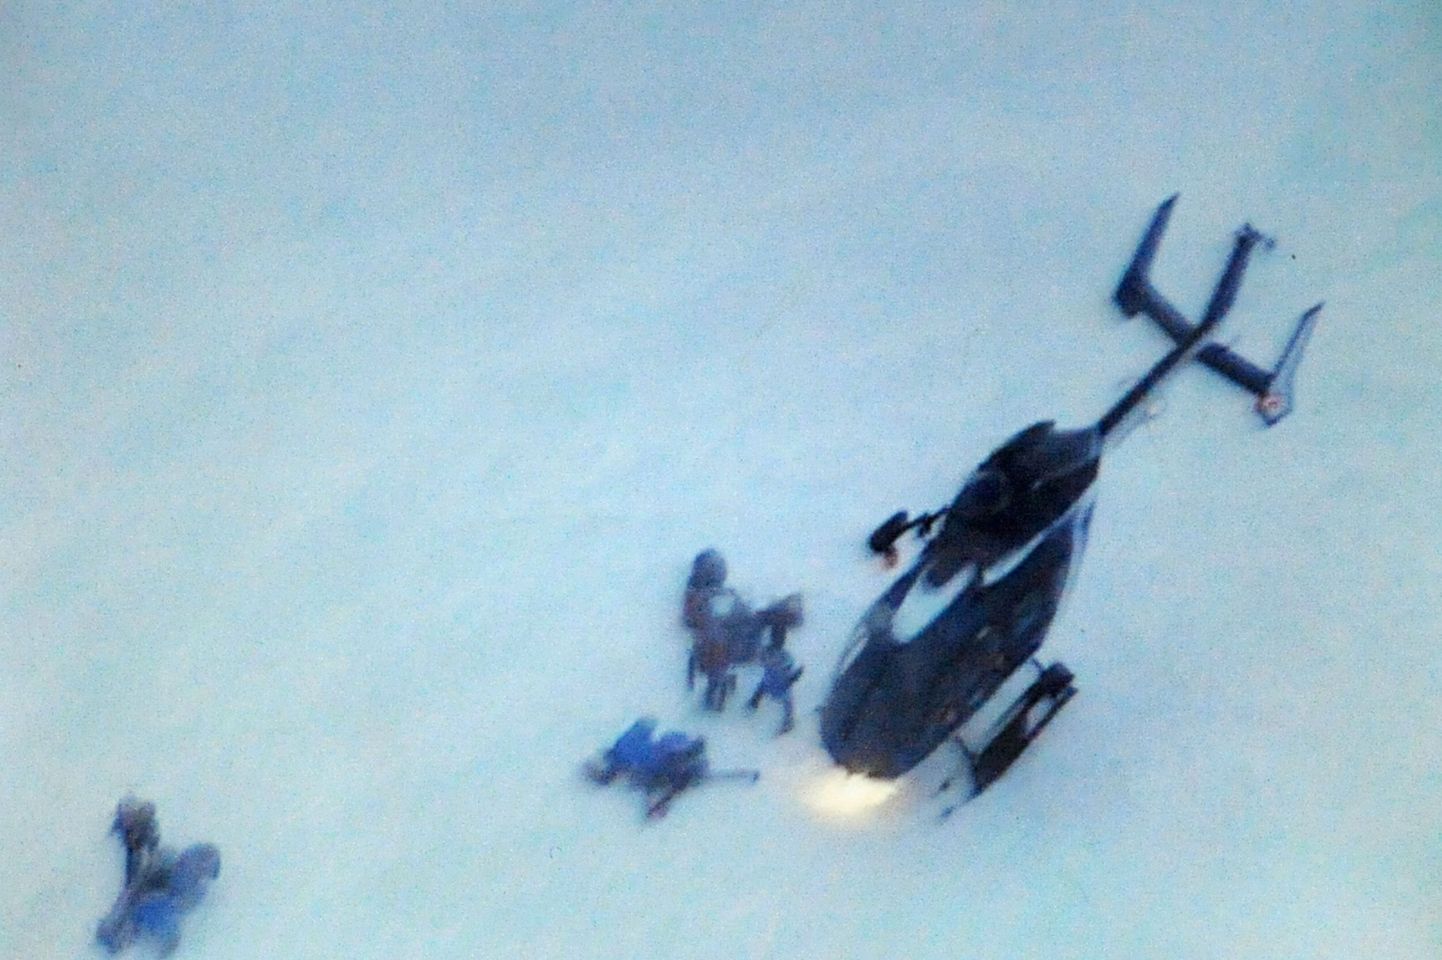 Päästehelikopter lumelaviinis ellu jäänuid ära transportimas